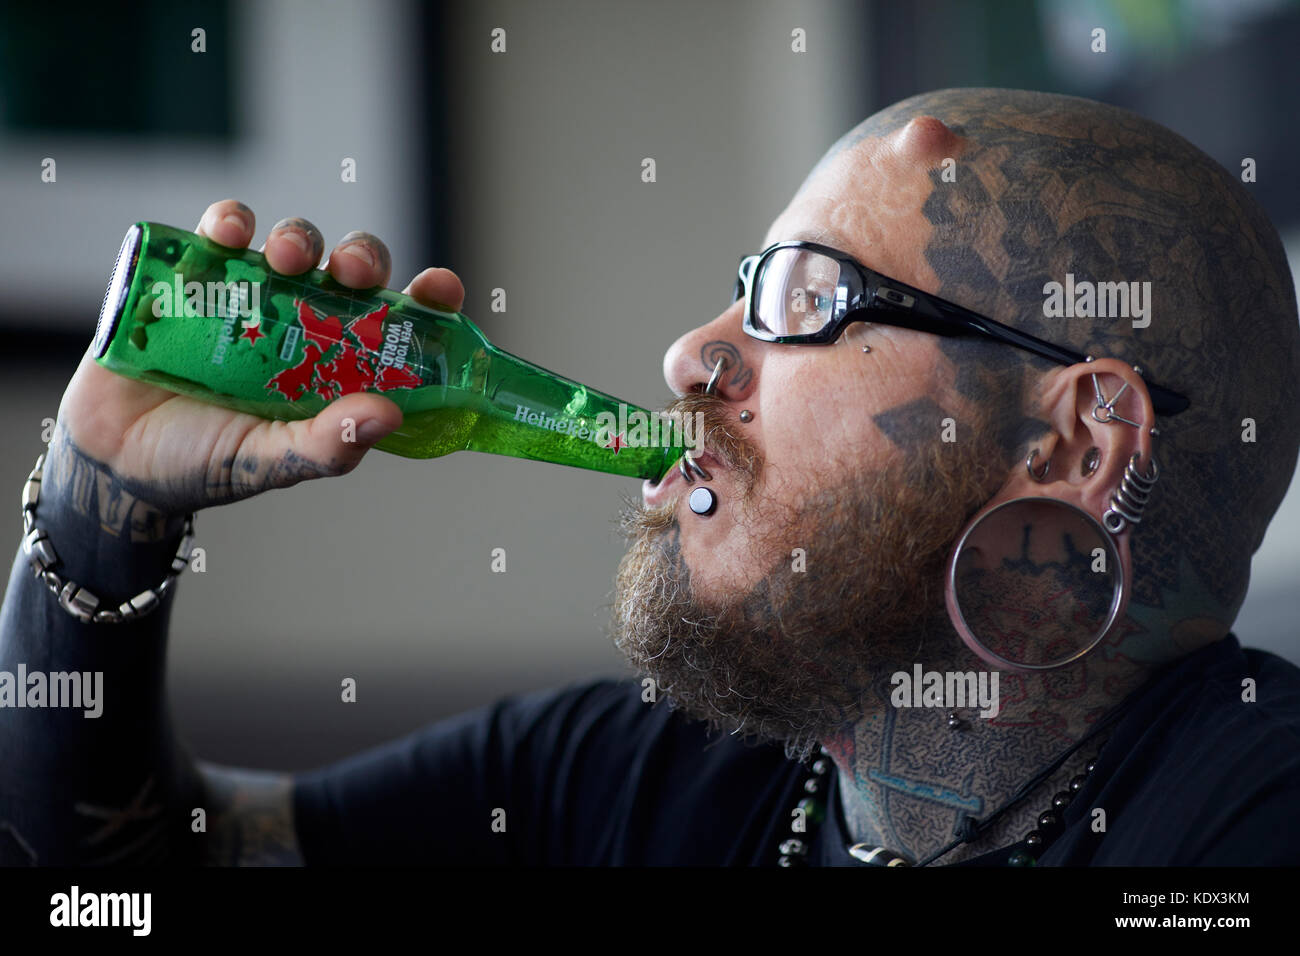 Le corps humain - Modification de boire de la bière Heineken Banque D'Images